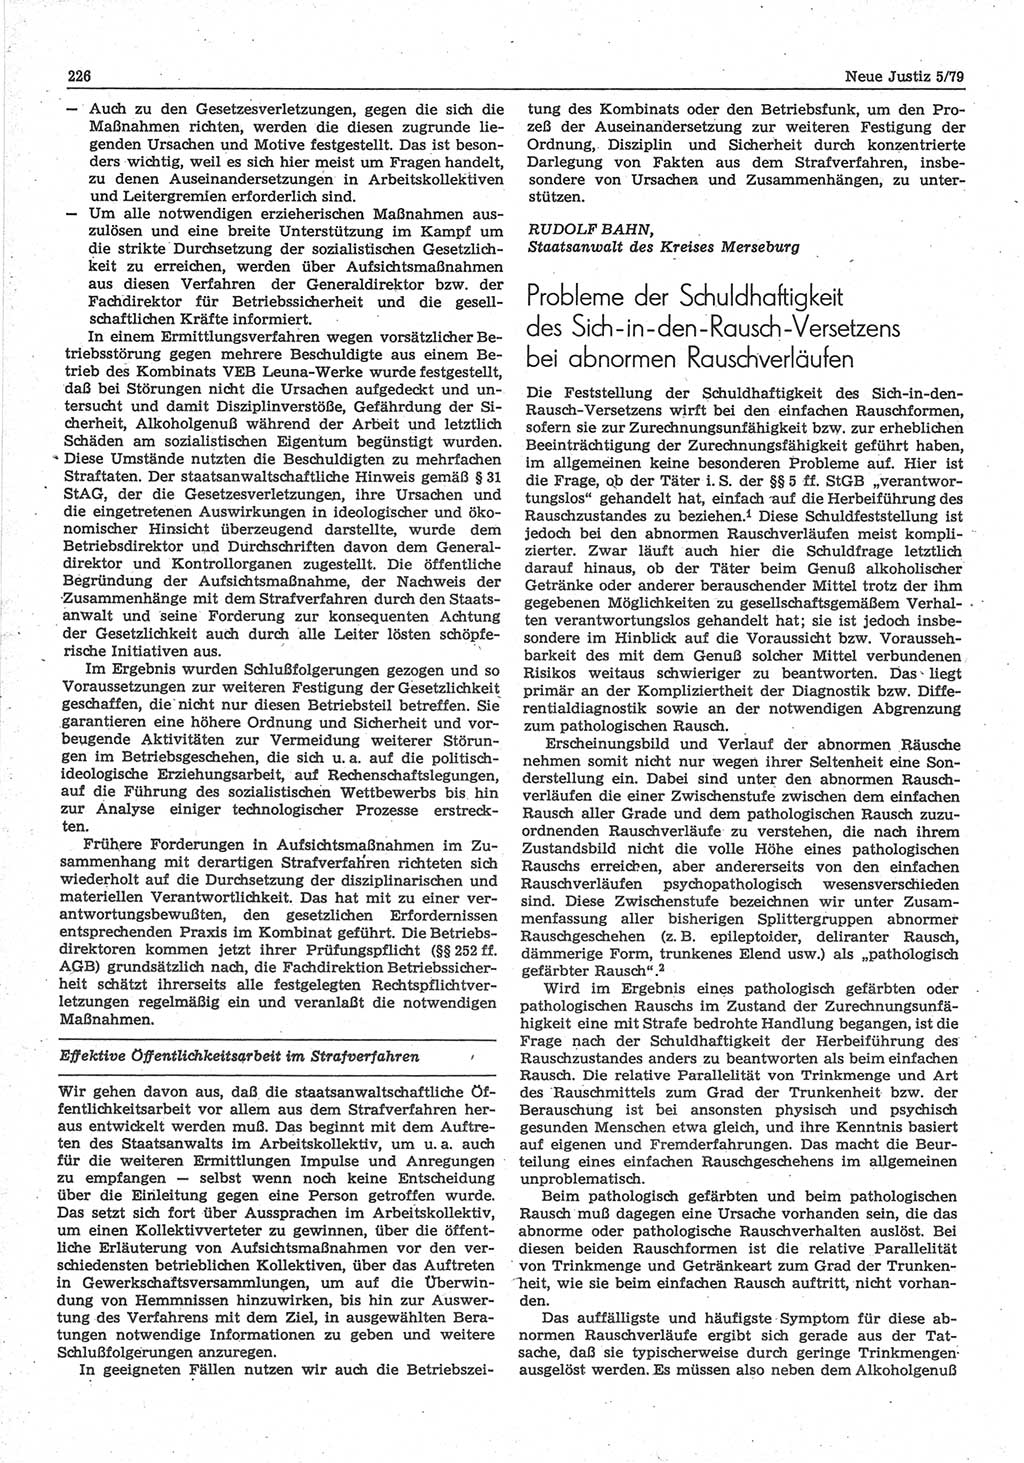 Neue Justiz (NJ), Zeitschrift für sozialistisches Recht und Gesetzlichkeit [Deutsche Demokratische Republik (DDR)], 33. Jahrgang 1979, Seite 226 (NJ DDR 1979, S. 226)